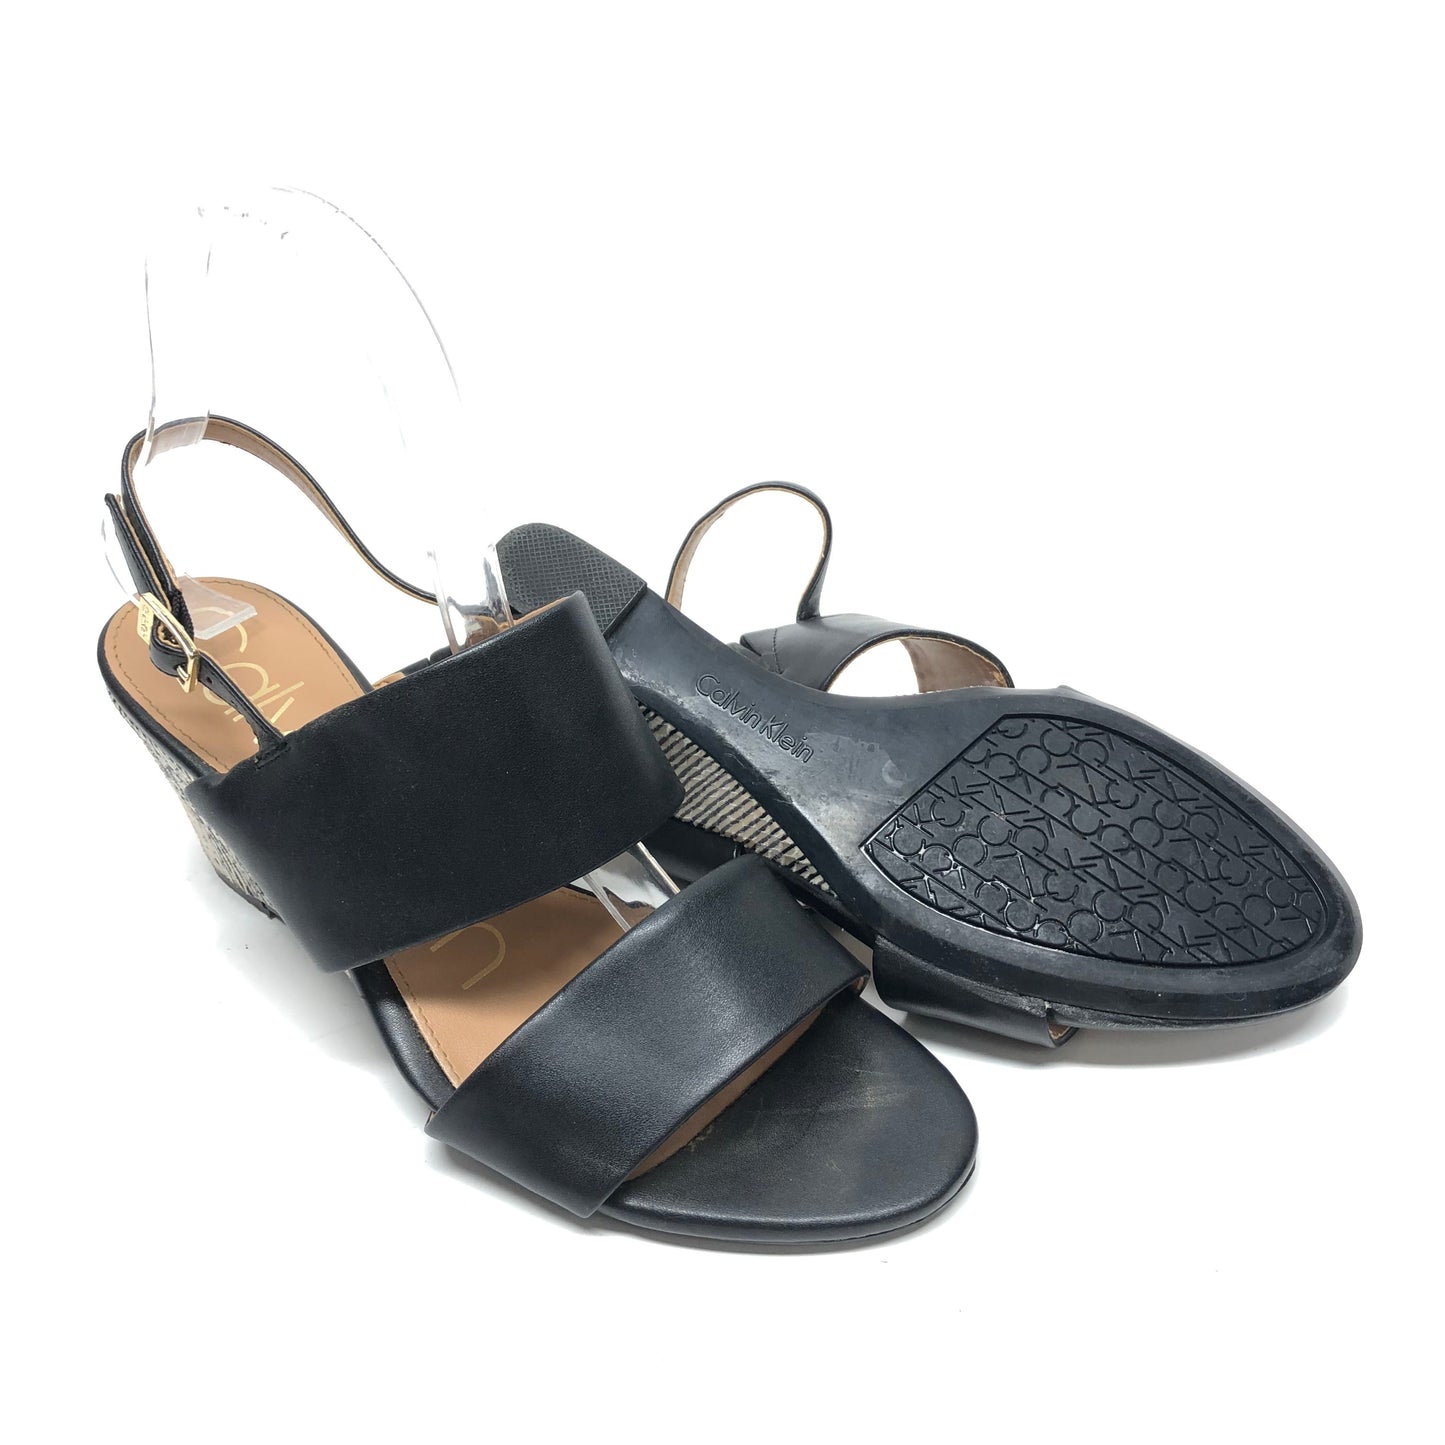 Sandals Heels Wedge By Calvin Klein  Size: 7.5